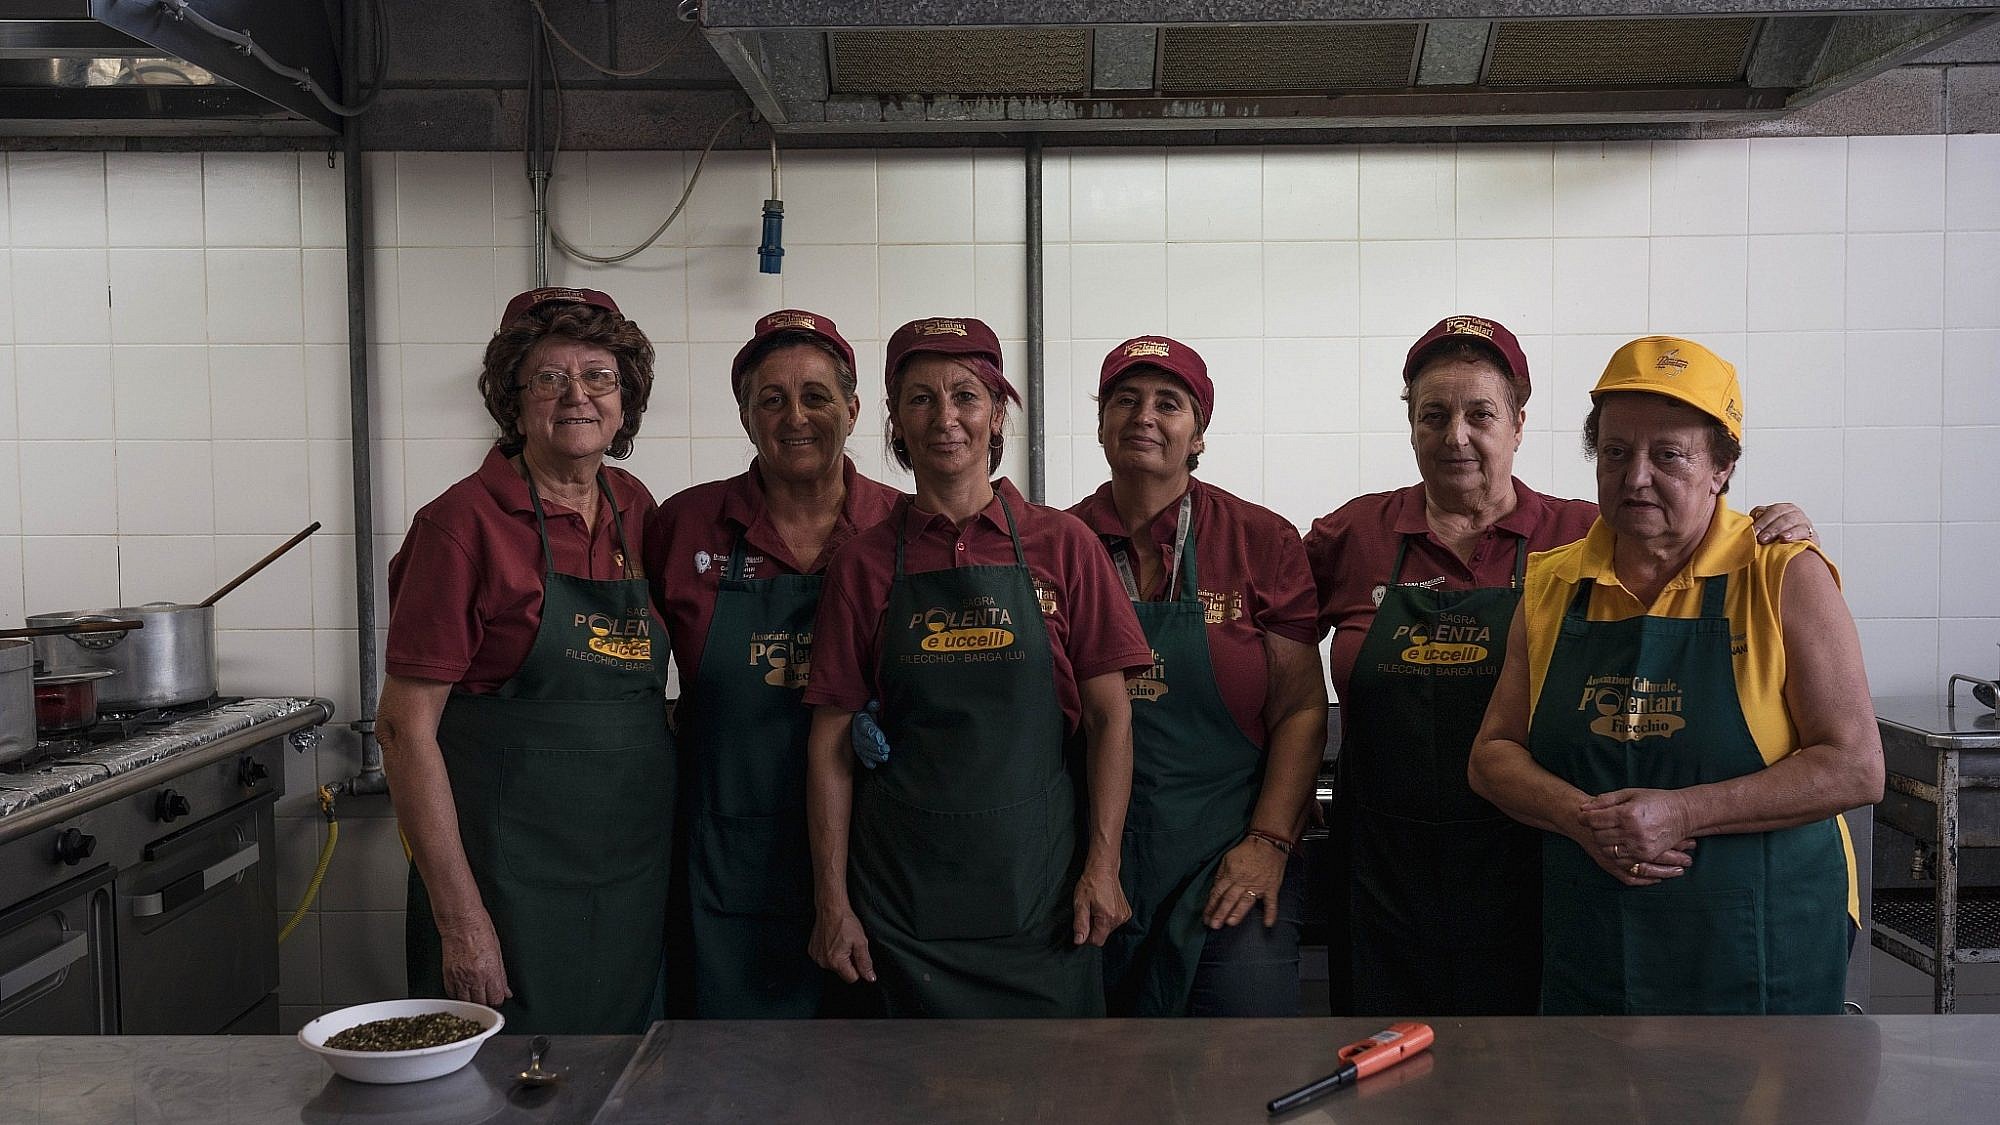 נשות הסגרה של הבשר בפסטיבל הסגרה באיטליה. צילום: ג'אדה פא'ולוני